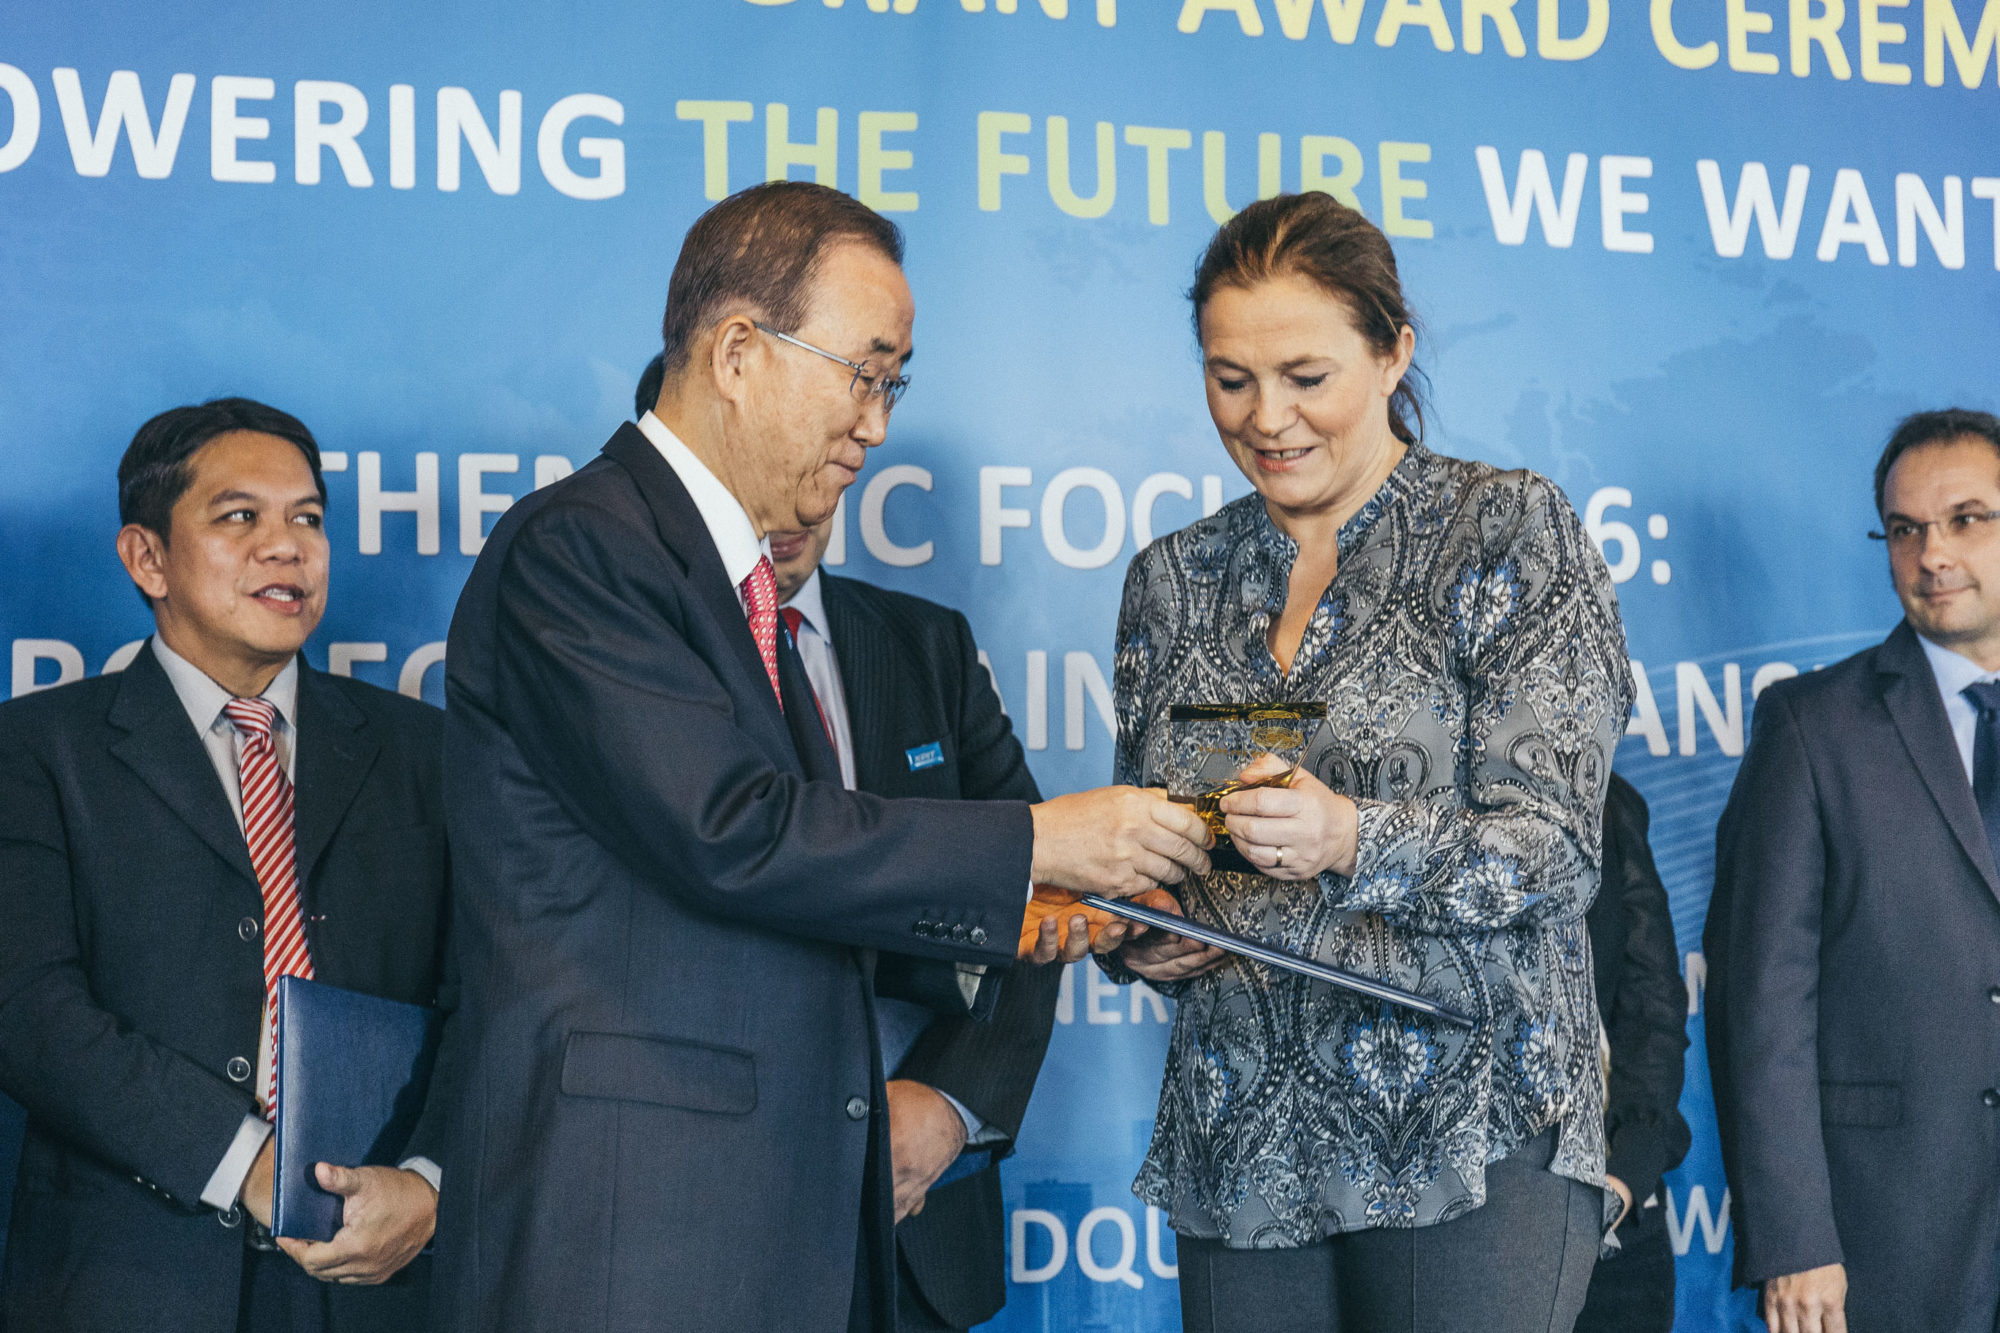 FNs generalsekretær Ban Ki-moon i samtale med SINTEF-sjef Alexandra Bech Gjørv i FN-bygningen i New York, foran himmelblå vegg, dekorert med innskriften "Powering the future we want"